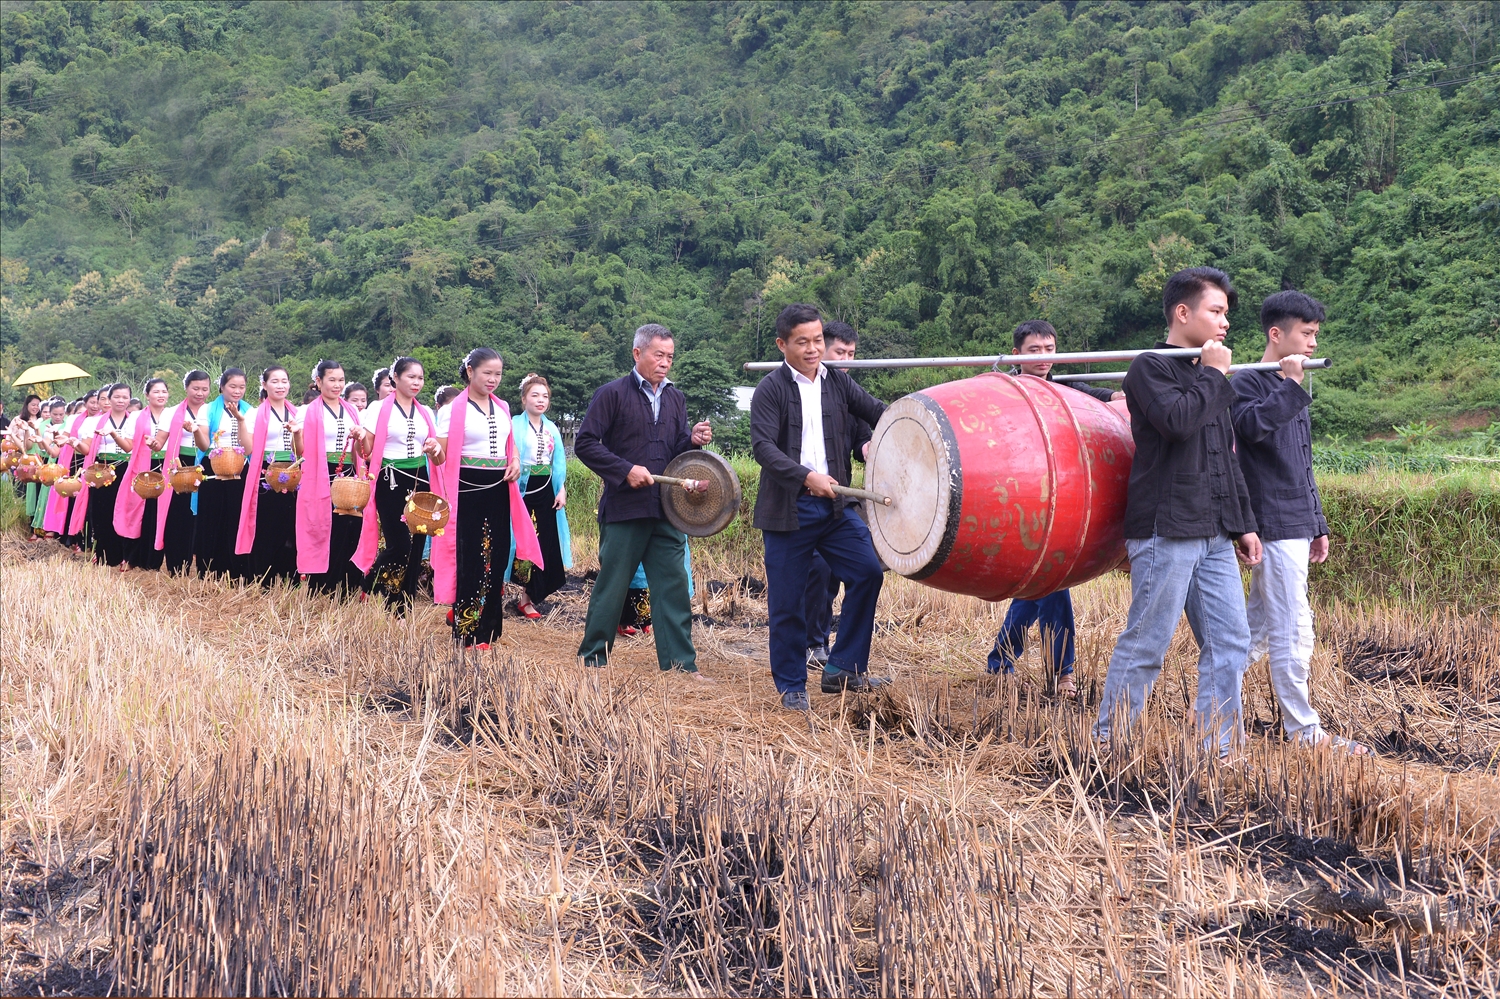 Nghi thức rước hồn lúa diễn ra trên cánh đồng Huổi Én vùng Mường So, Phong Thổ, là nghi lễ linh thiêng thể hiện đề cao nghề canh nông.